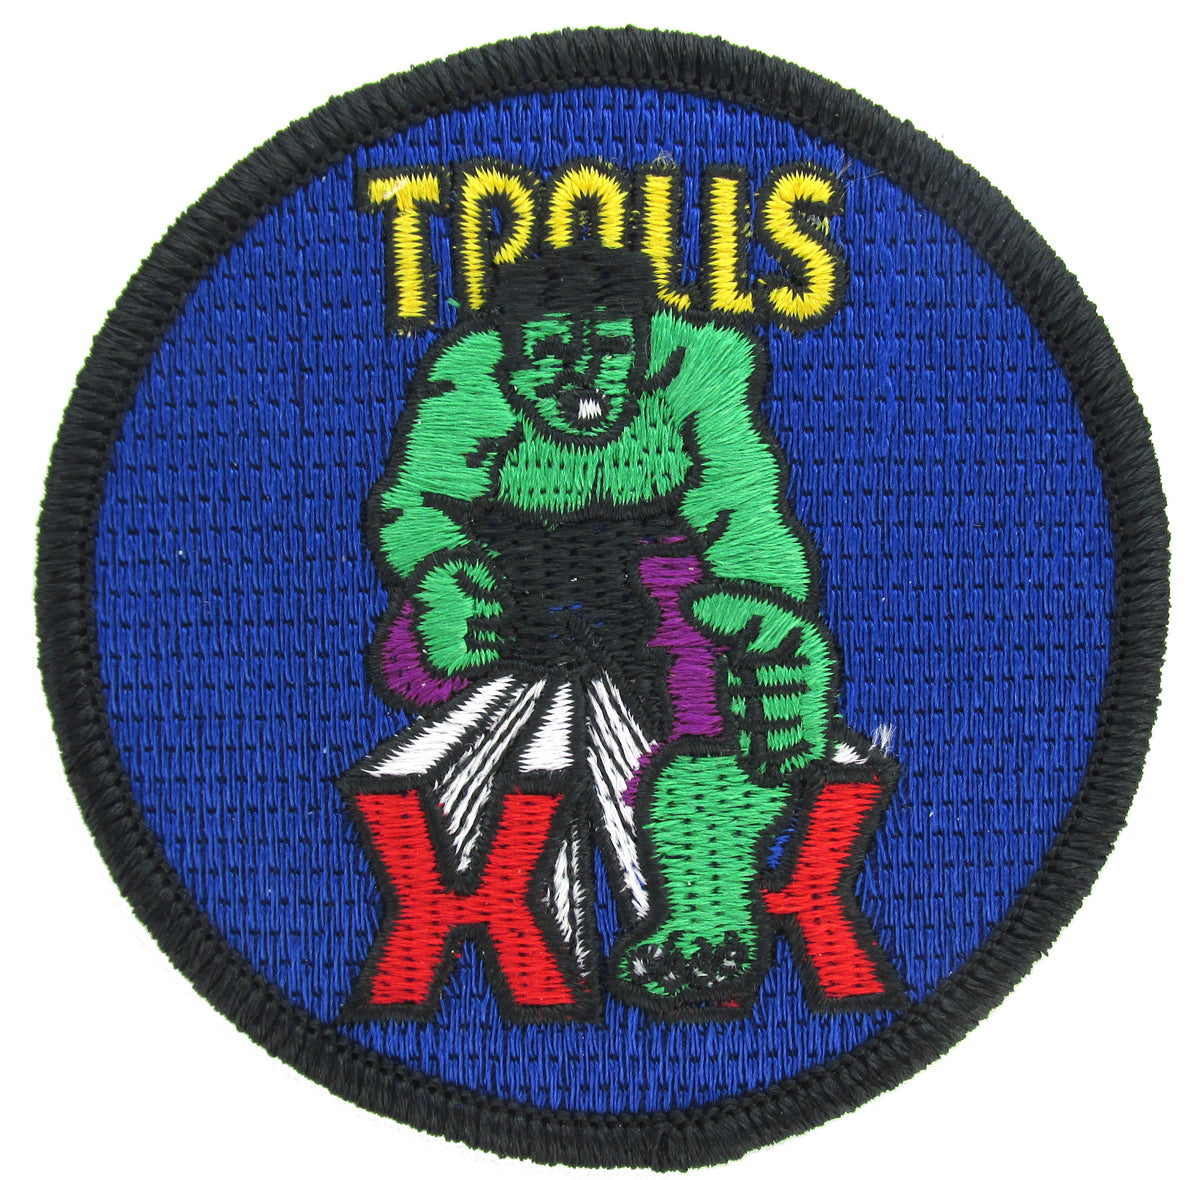  USAF Academy 20th Cadet Squadron Patch - Tough Twenty Trolls